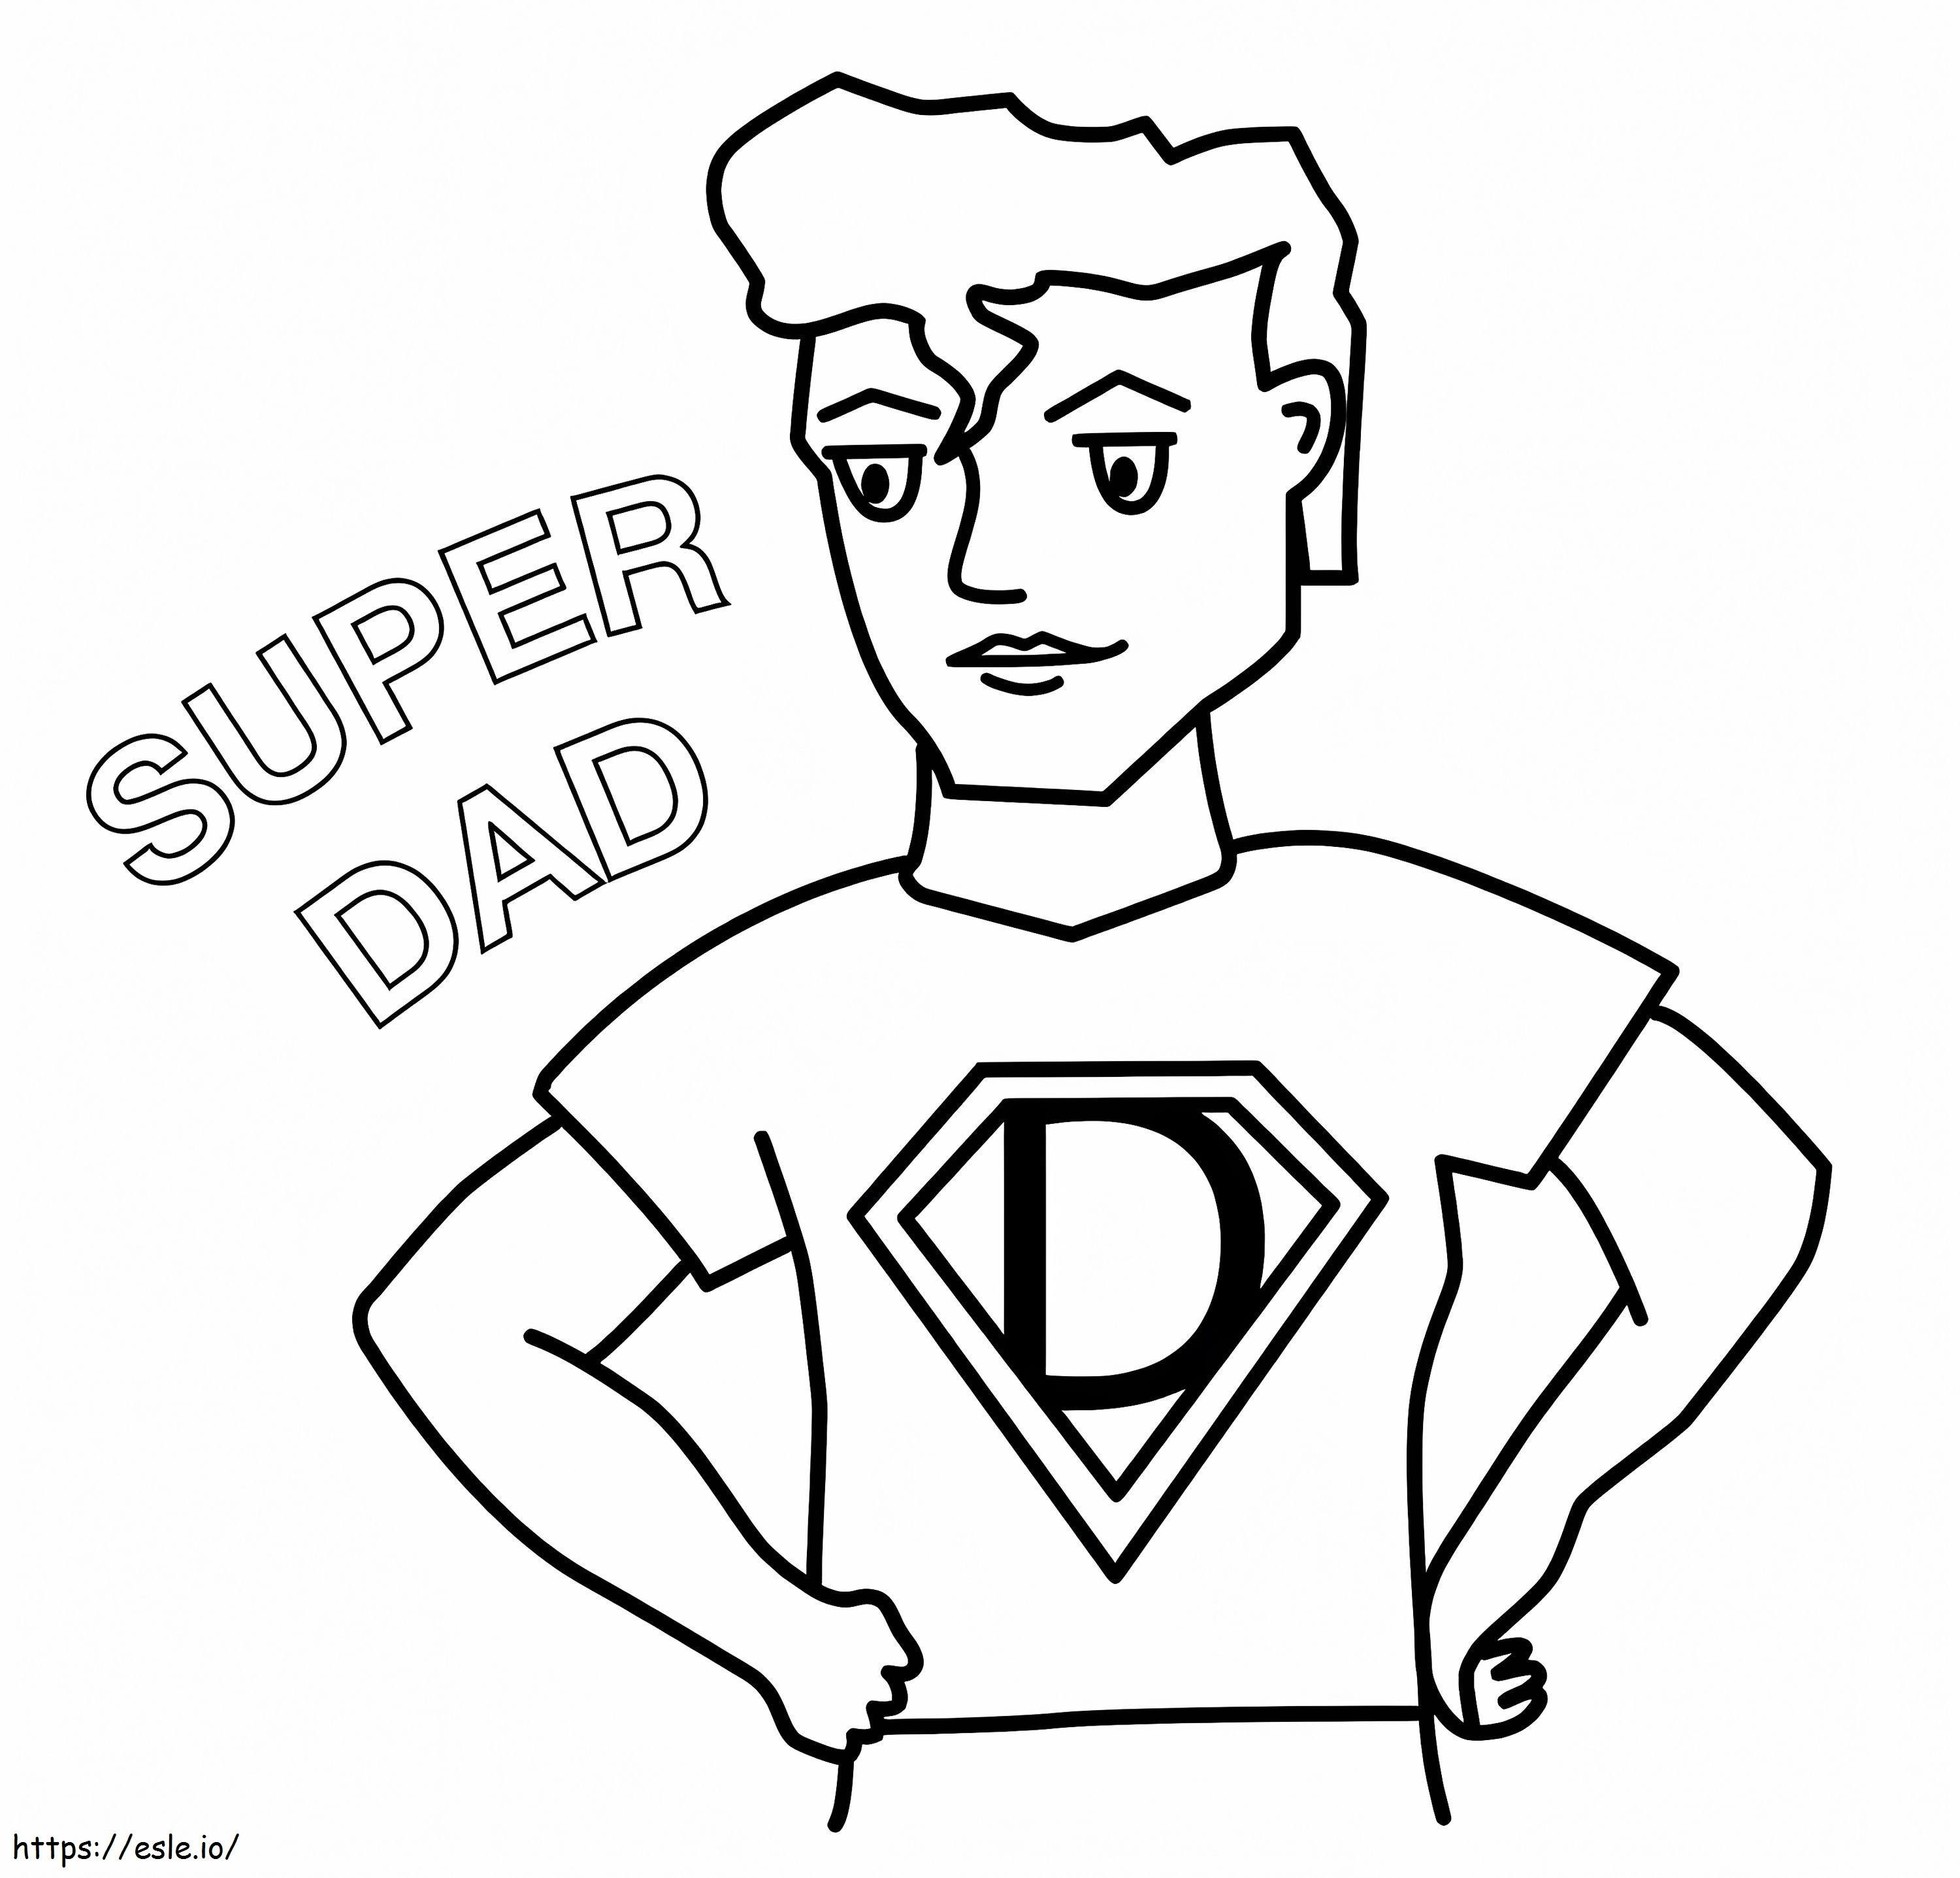 Vatertag Super Dad ausmalbilder